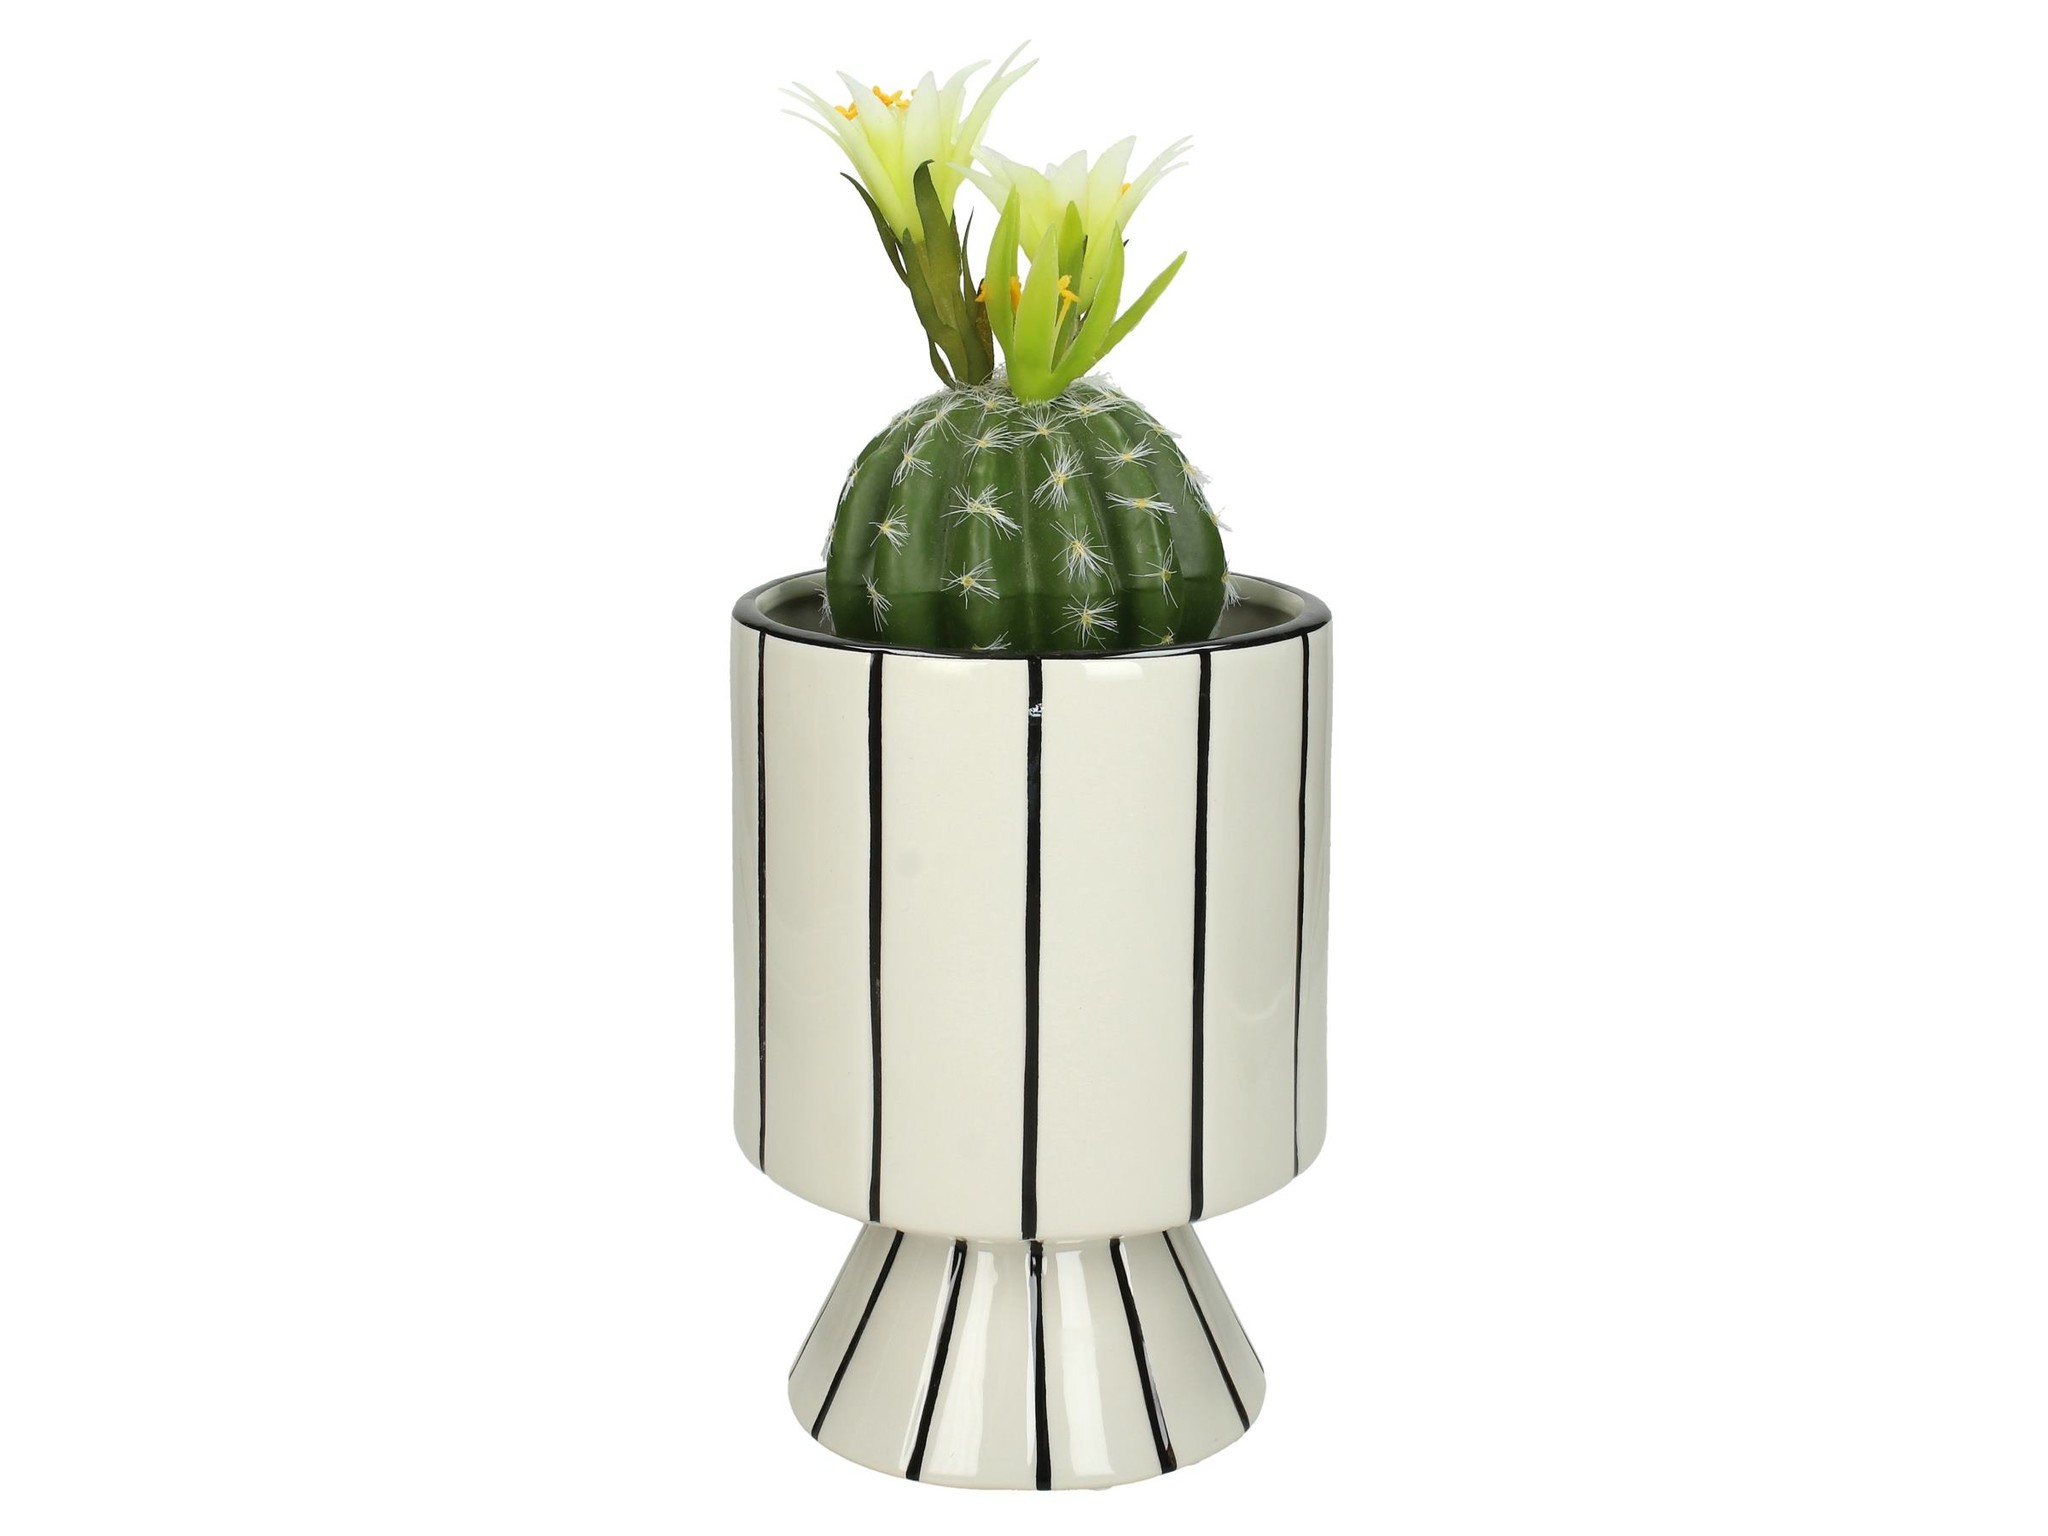 Bloempot op Zwart / Wit gestreept - Design pot keramiek - Livv